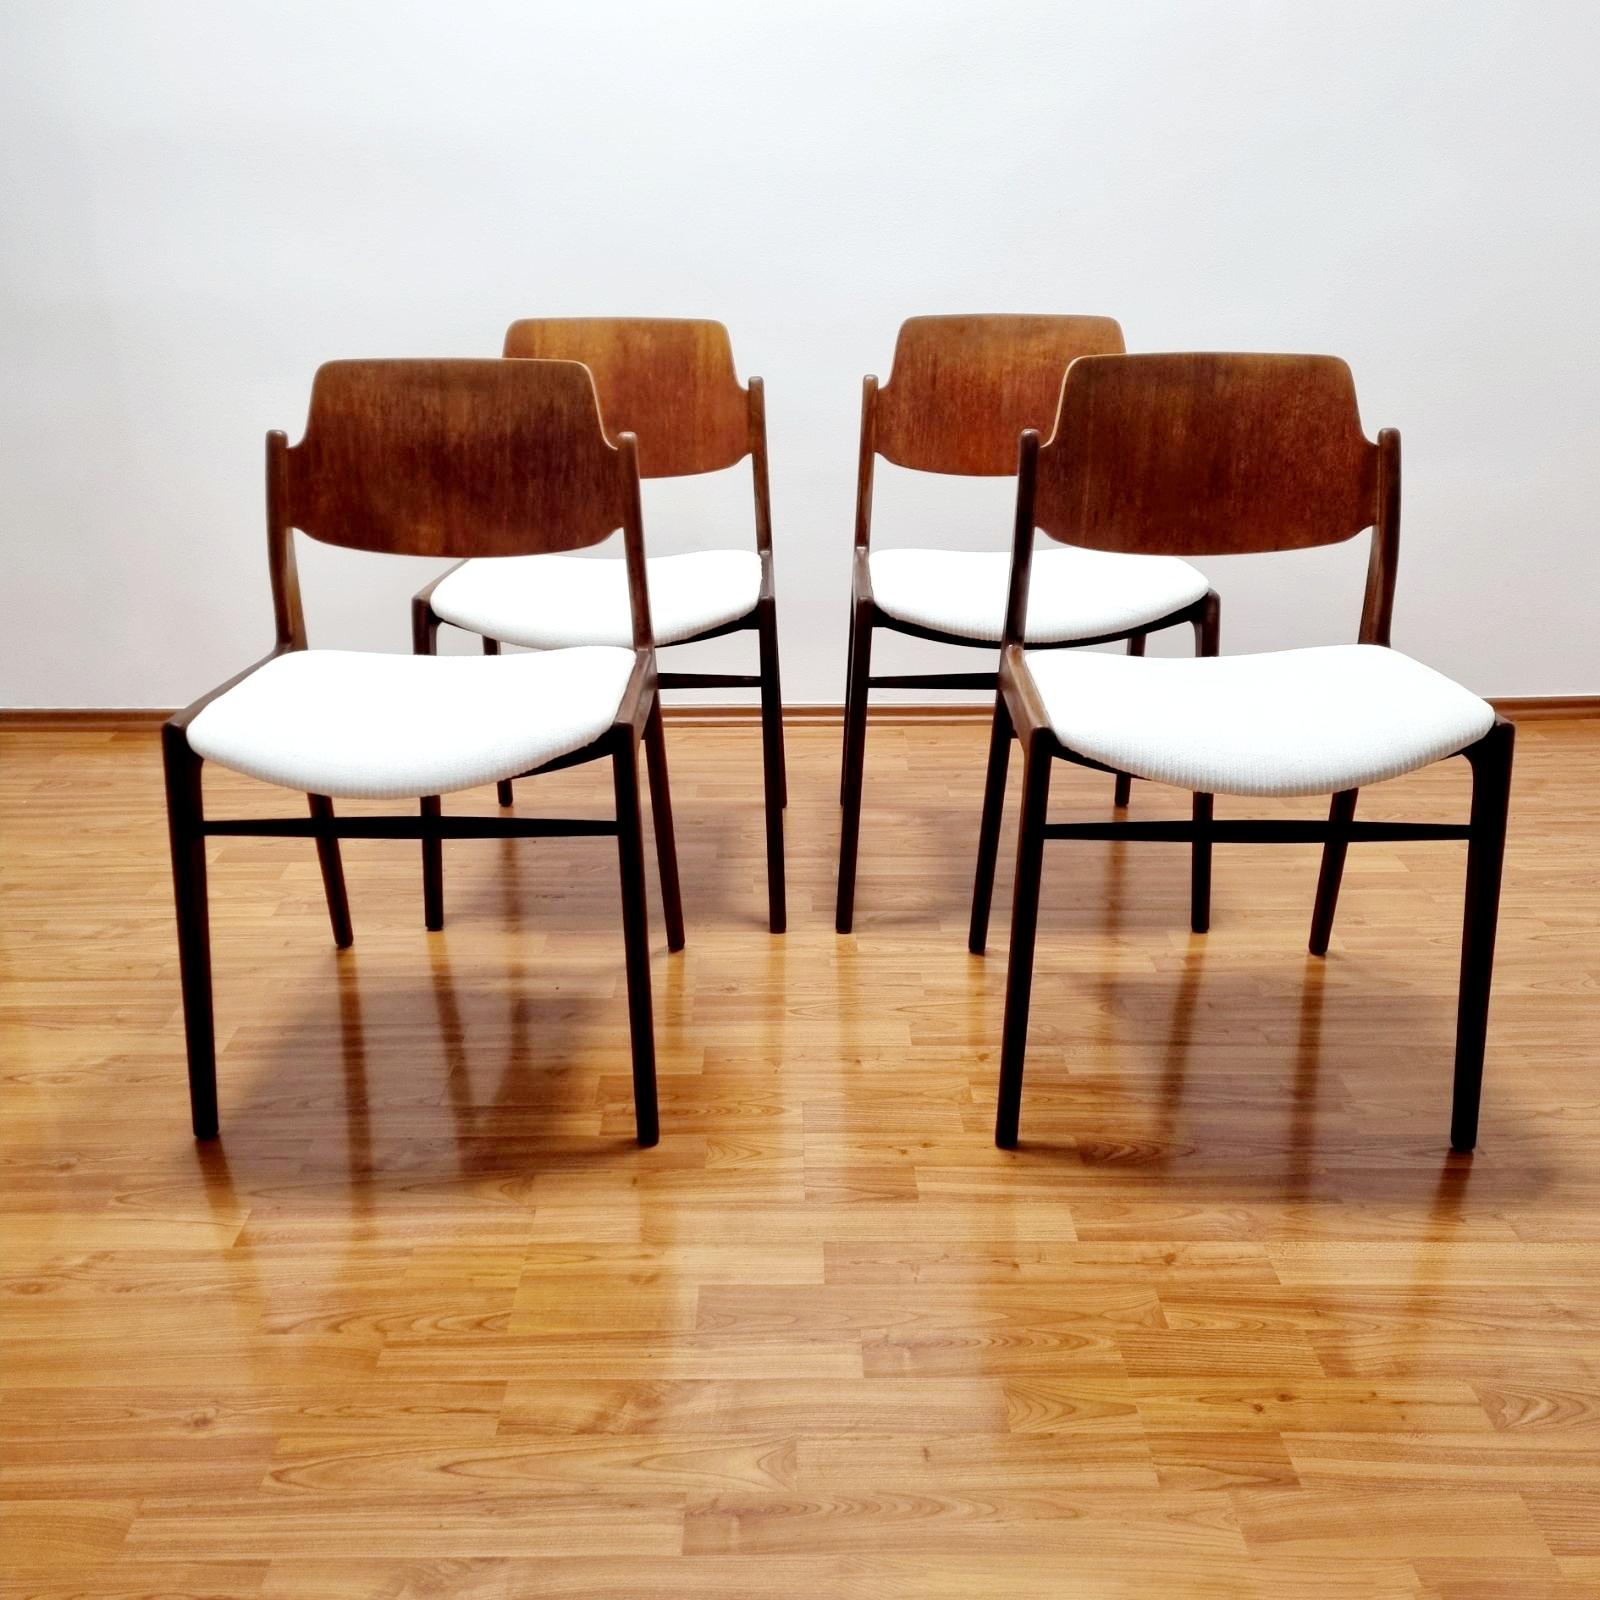 Satz von 4 Esszimmerstühlen aus Teakholz aus den 60er Jahren. Entworfen von Hartmut Lohmeyer für Wilkhahn.
In sehr gutem Zustand. Die Polsterung wurde vor kurzem komplett erneuert.

Abmessungen:
H 79cm, Sitzhöhe 46 cm
B 49 cm
T 54 cm